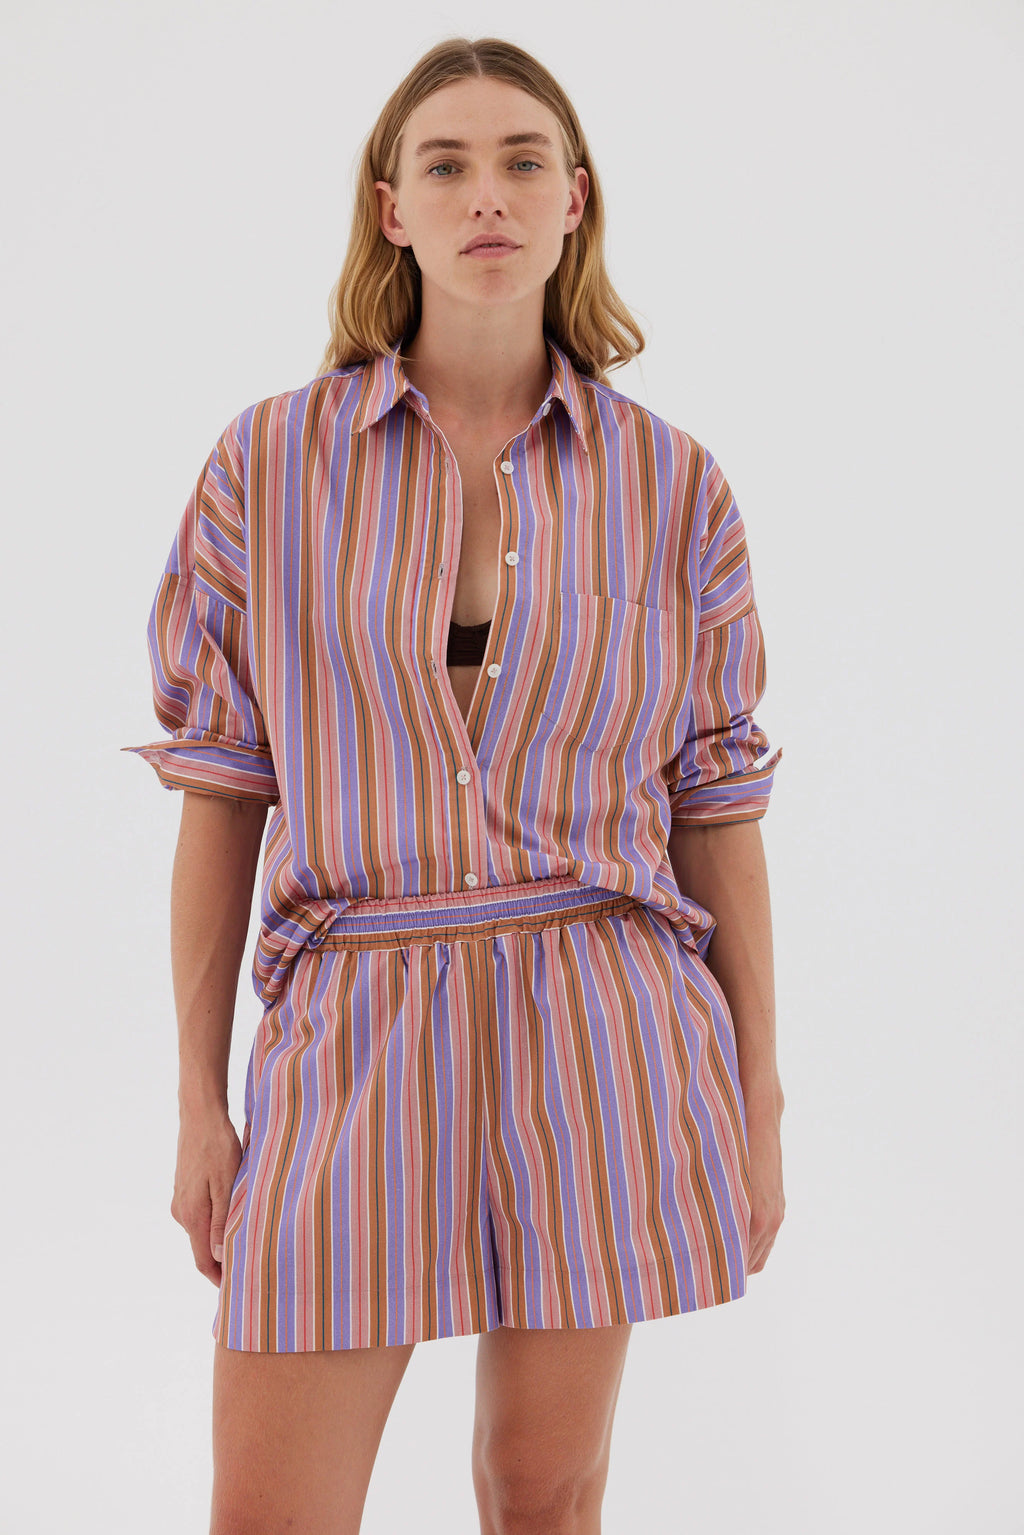 Chiara Classic Shirt - Multi Stripes -M